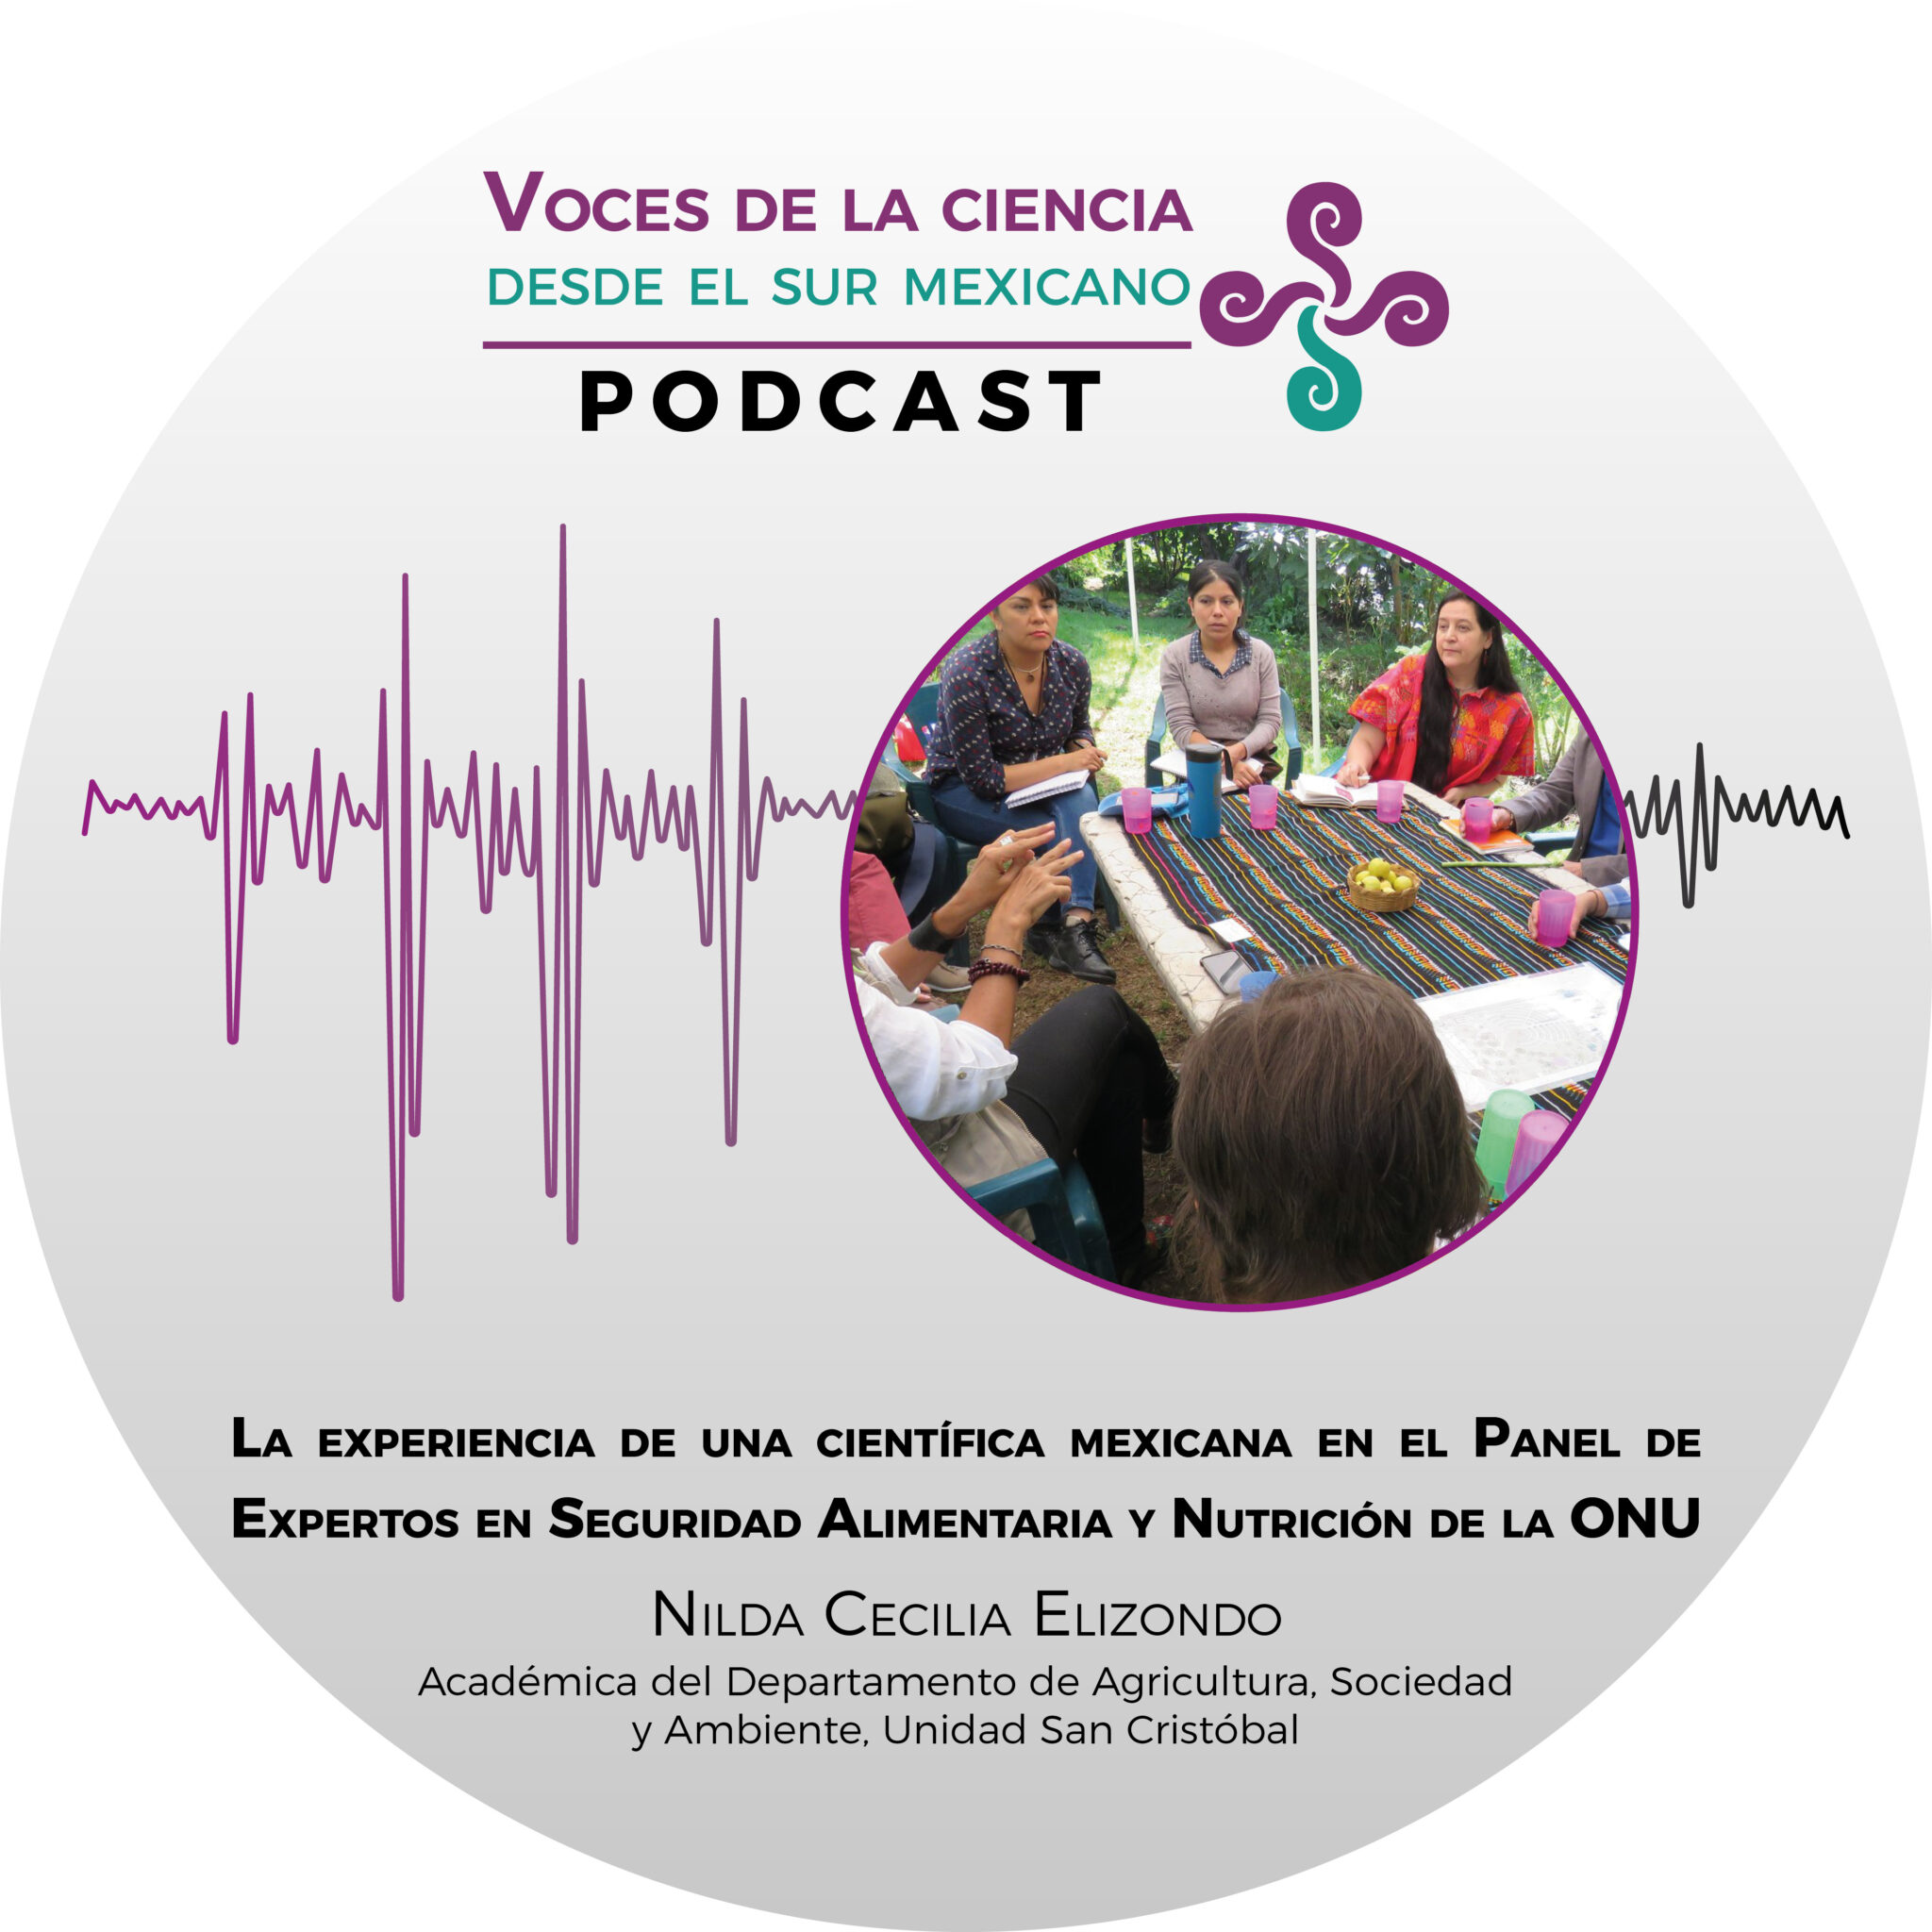 La experiencia de una científica mexicana en el Panel de Expertos en Seguridad Alimentaria y Nutrición de la ONU